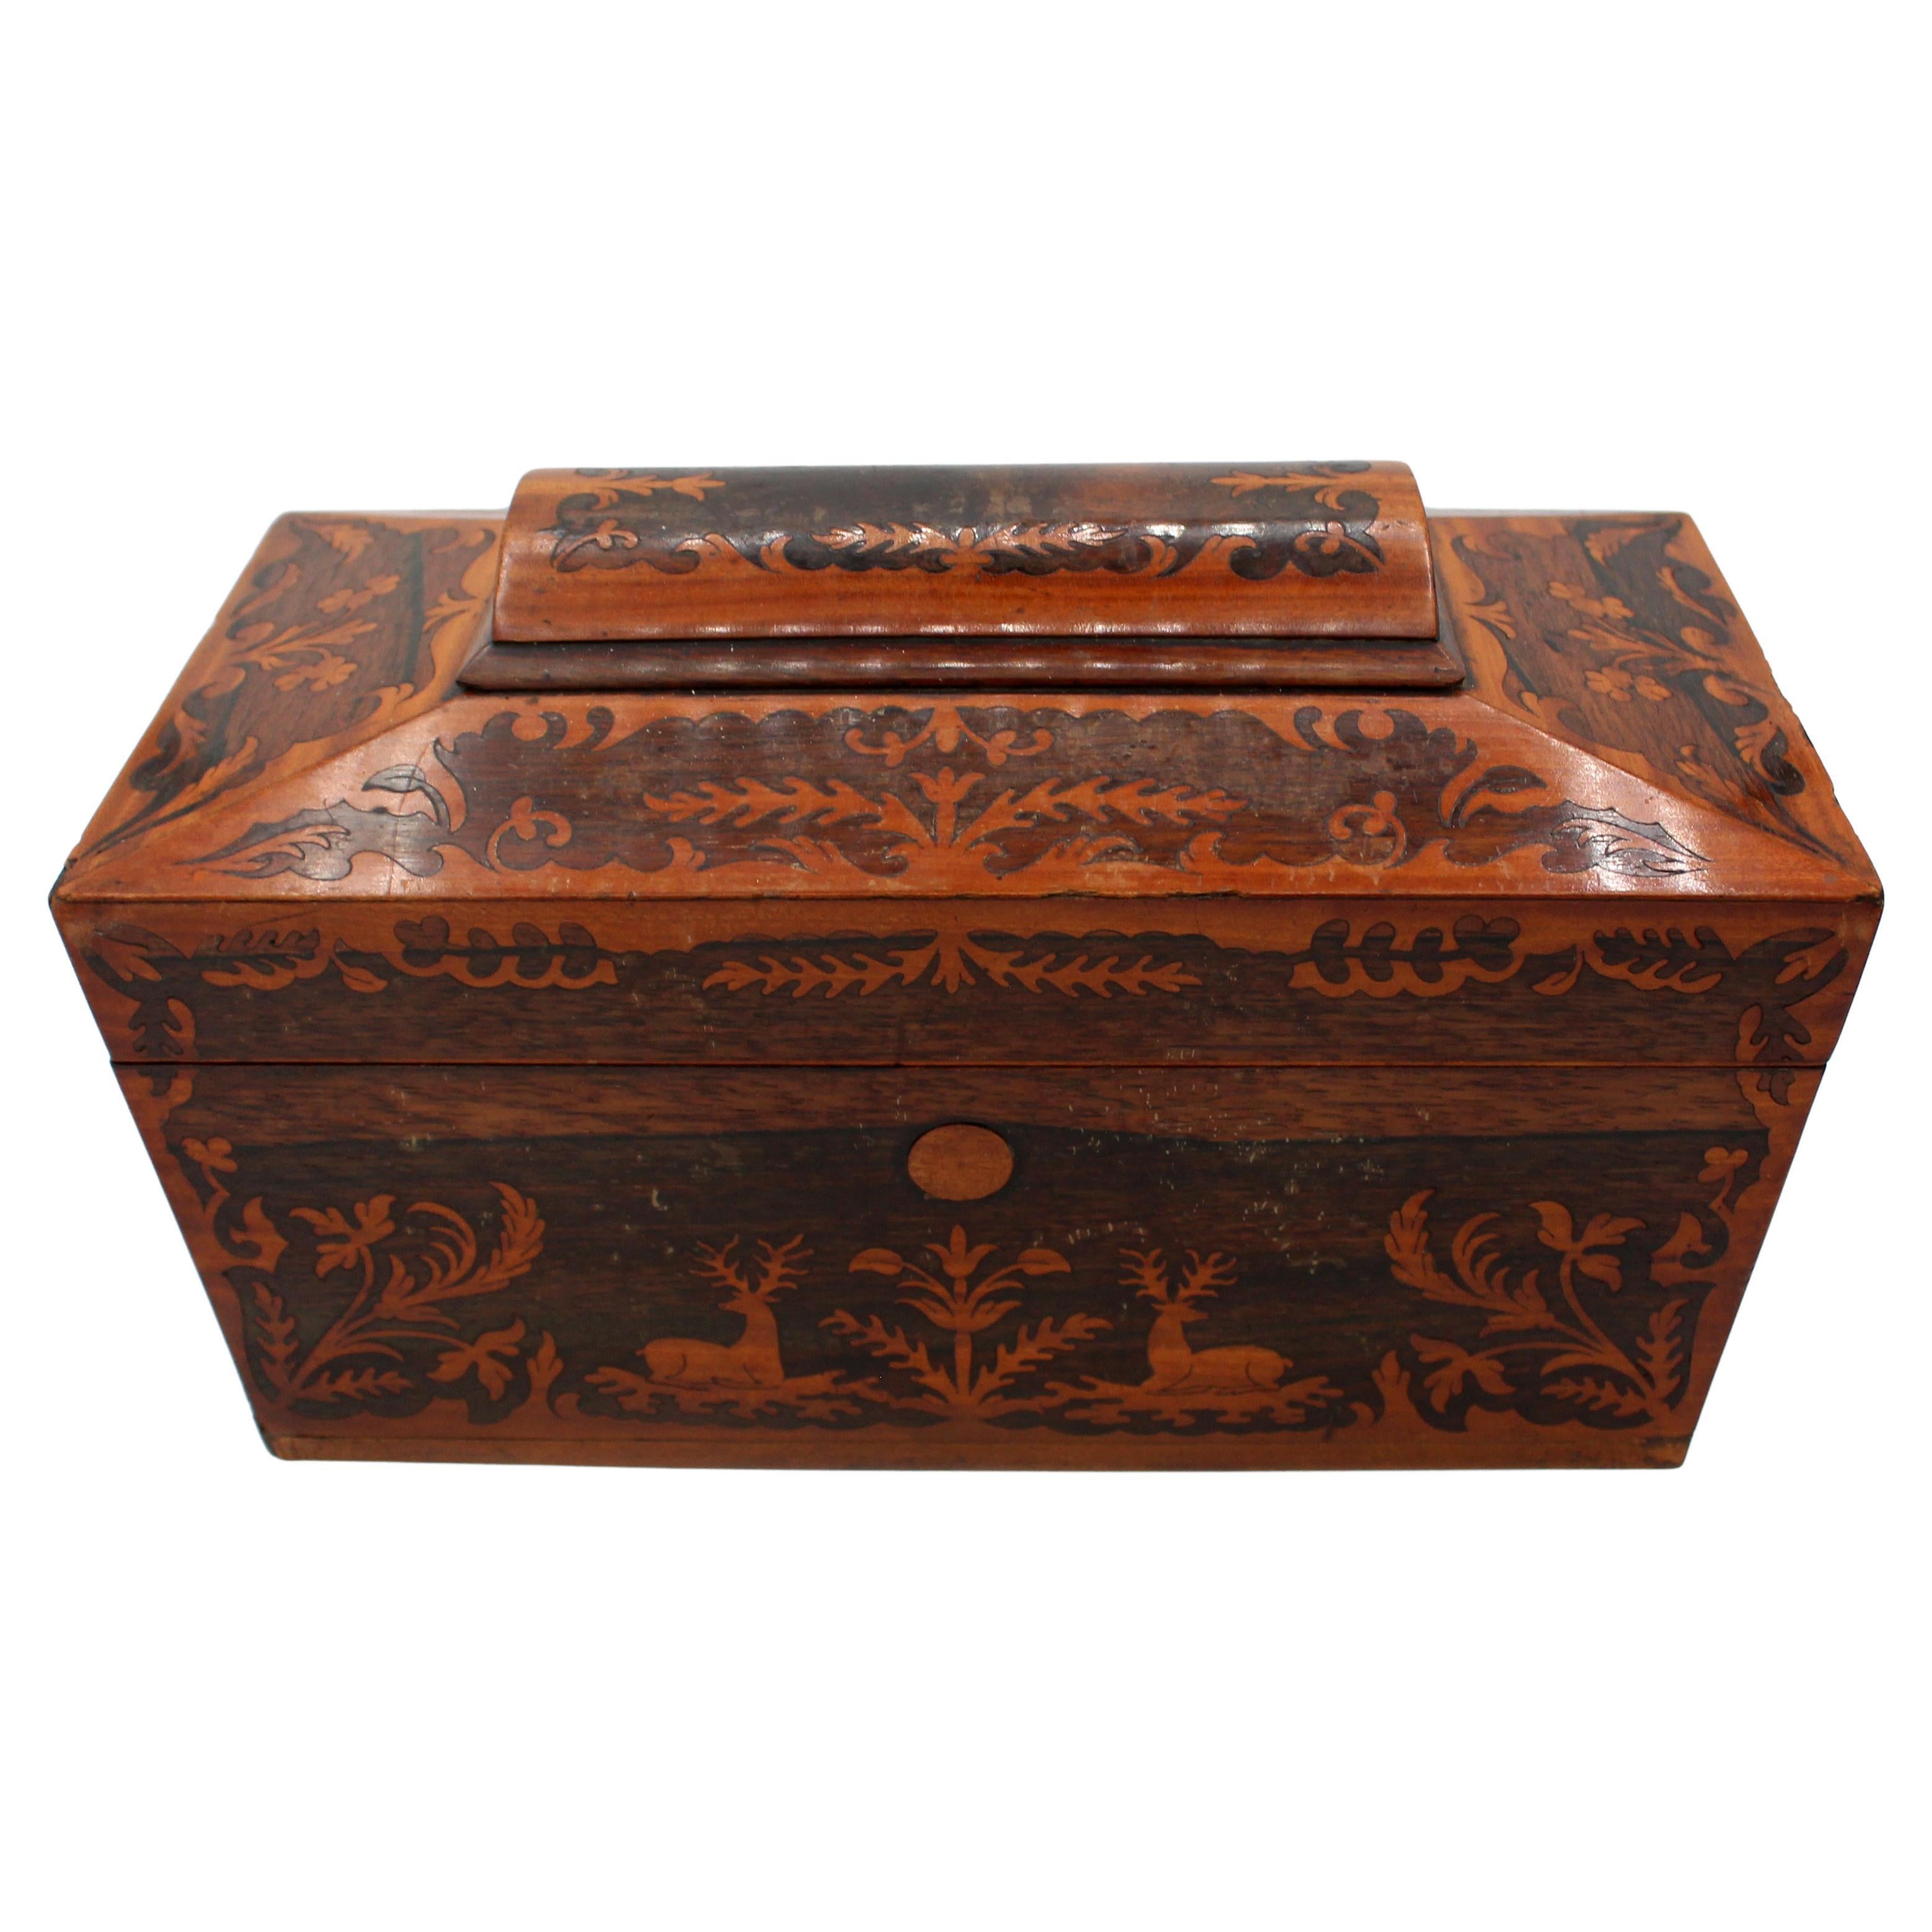 Circa 1830 English Stag & Naturalistic Box